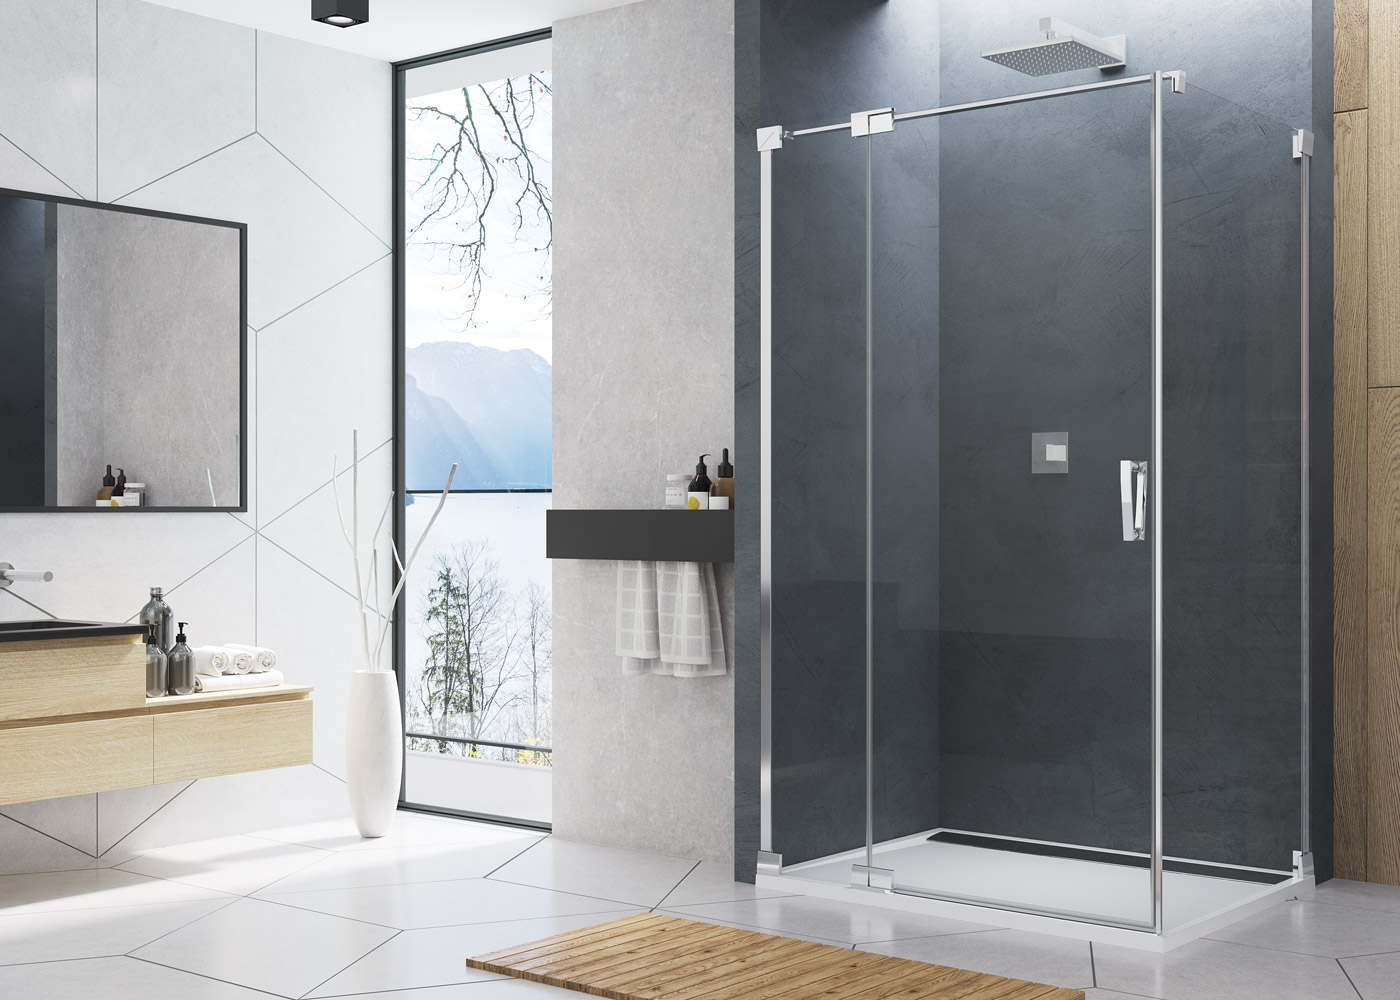 Sprchový kout Sanswiss čtvercový 100x100, aluchrom/čiré sklo, otvírání dovnitř i ven.